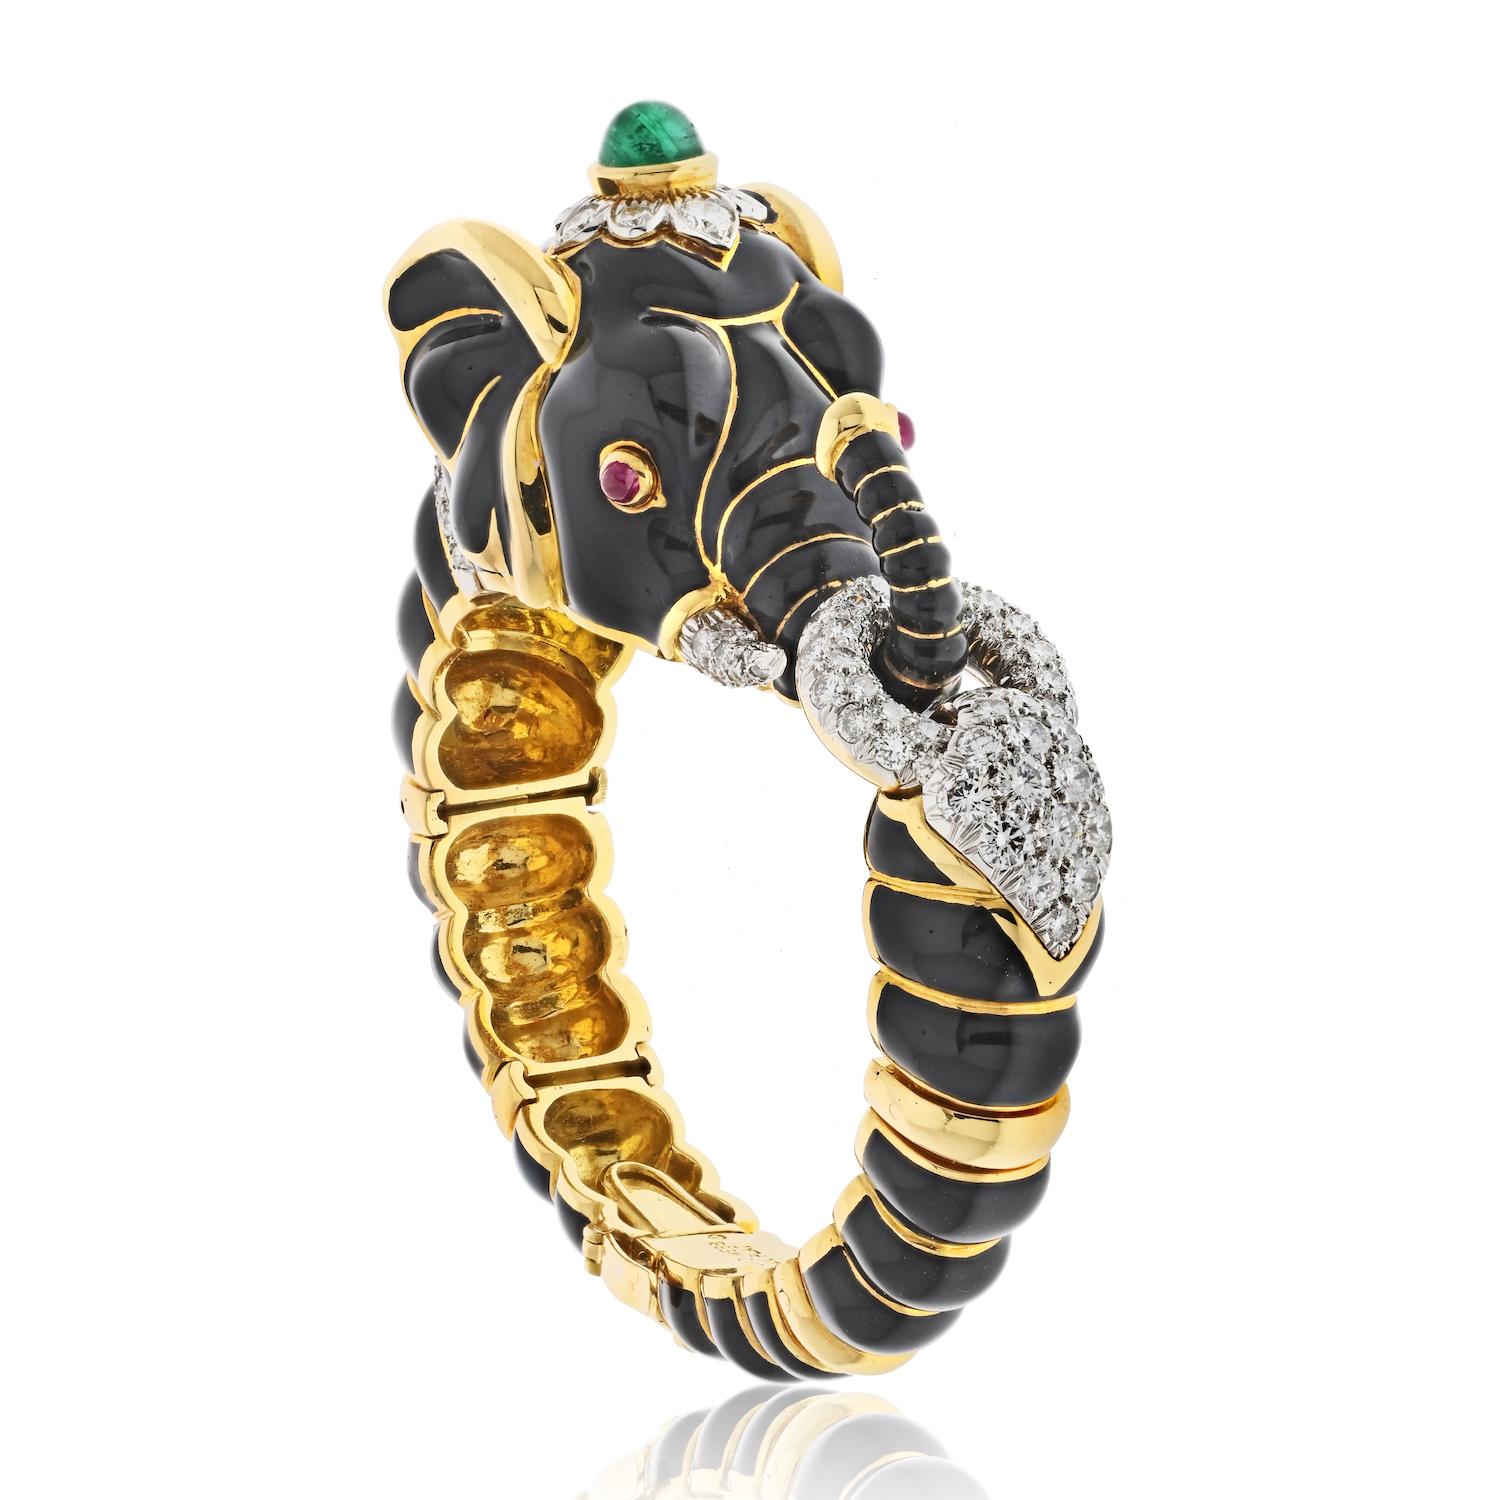 Le bracelet éléphant en or jaune 18 carats de David Webb, orné de diamants, de rubis et d'émeraudes vertes en émail noir, de la Collection Salsa, est un bijou exceptionnel qui respire le luxe et la sophistication. Le bracelet présente un design